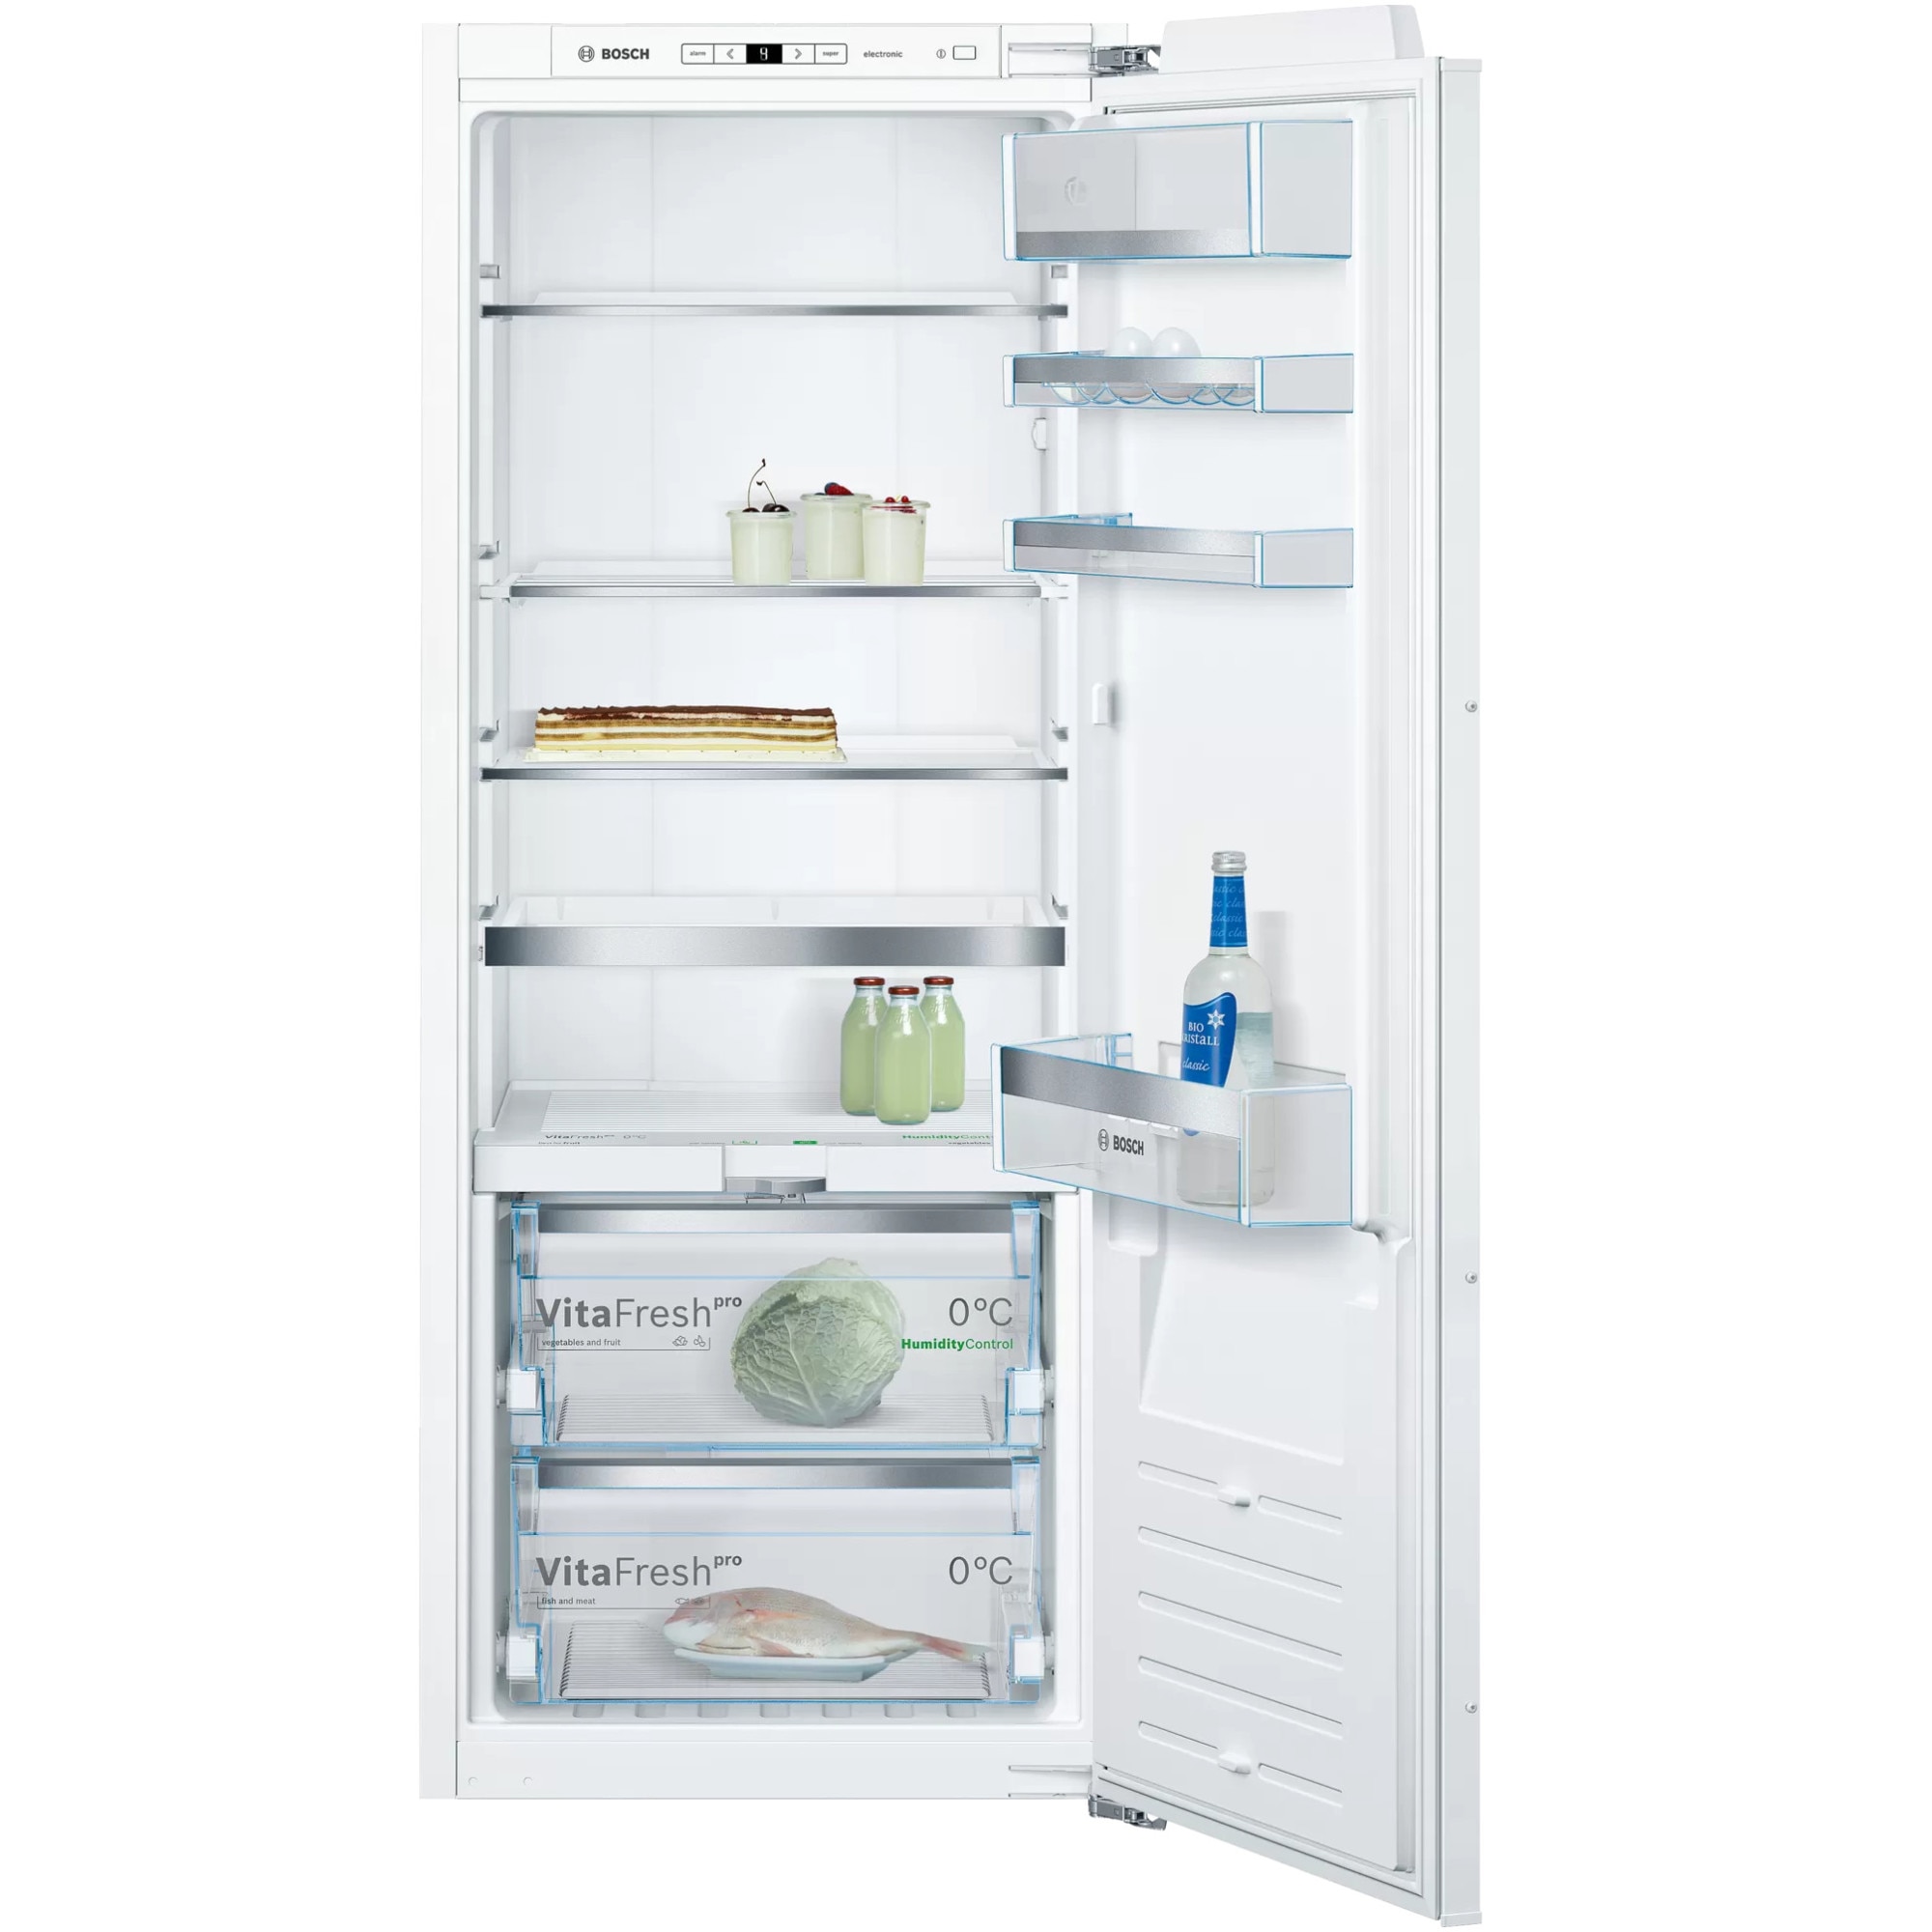 Однокамерный холодильник бош. Мини холодильник Bosch. Холодильник Bosch 8 Series. Немецкие холодильники бош. Холодильник 8 часов